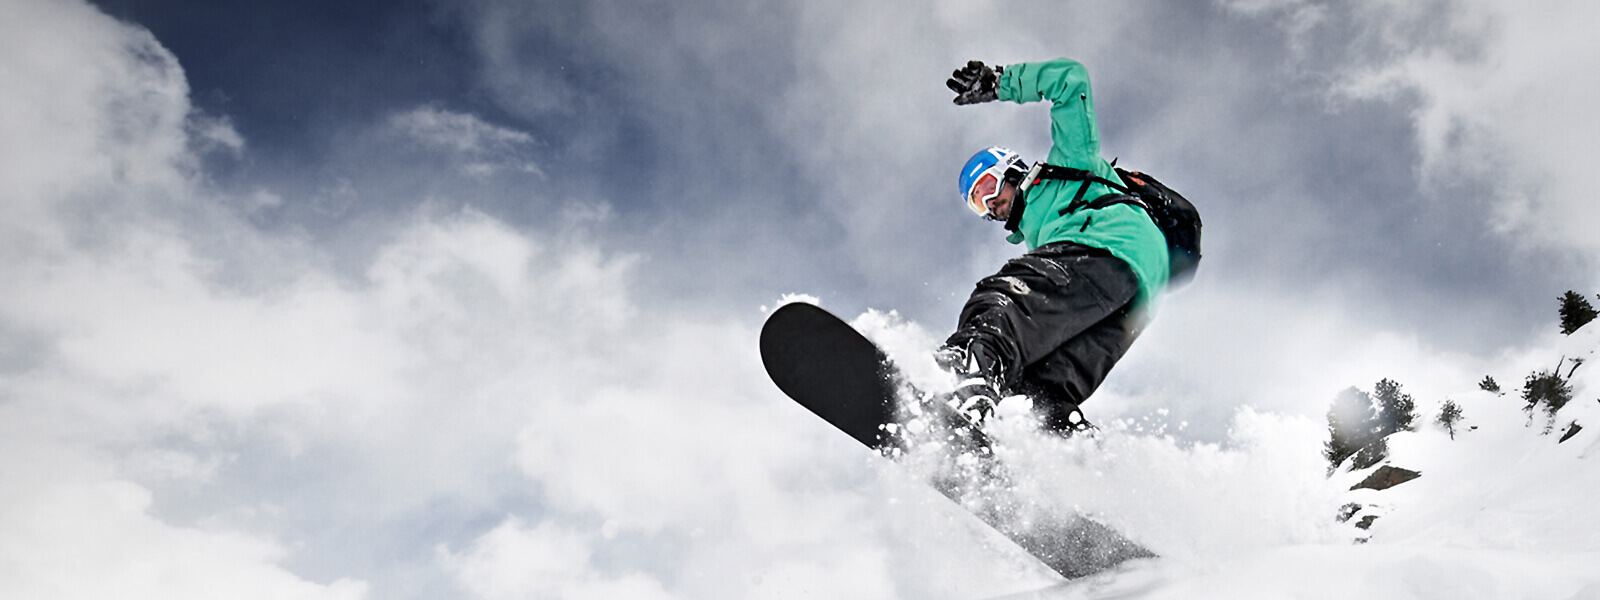 Prospettiva della rana: gli snowboarder in una giacca verde provengono dall'alto sopra una tavola crestata e si può vedere molta neve sussurrata